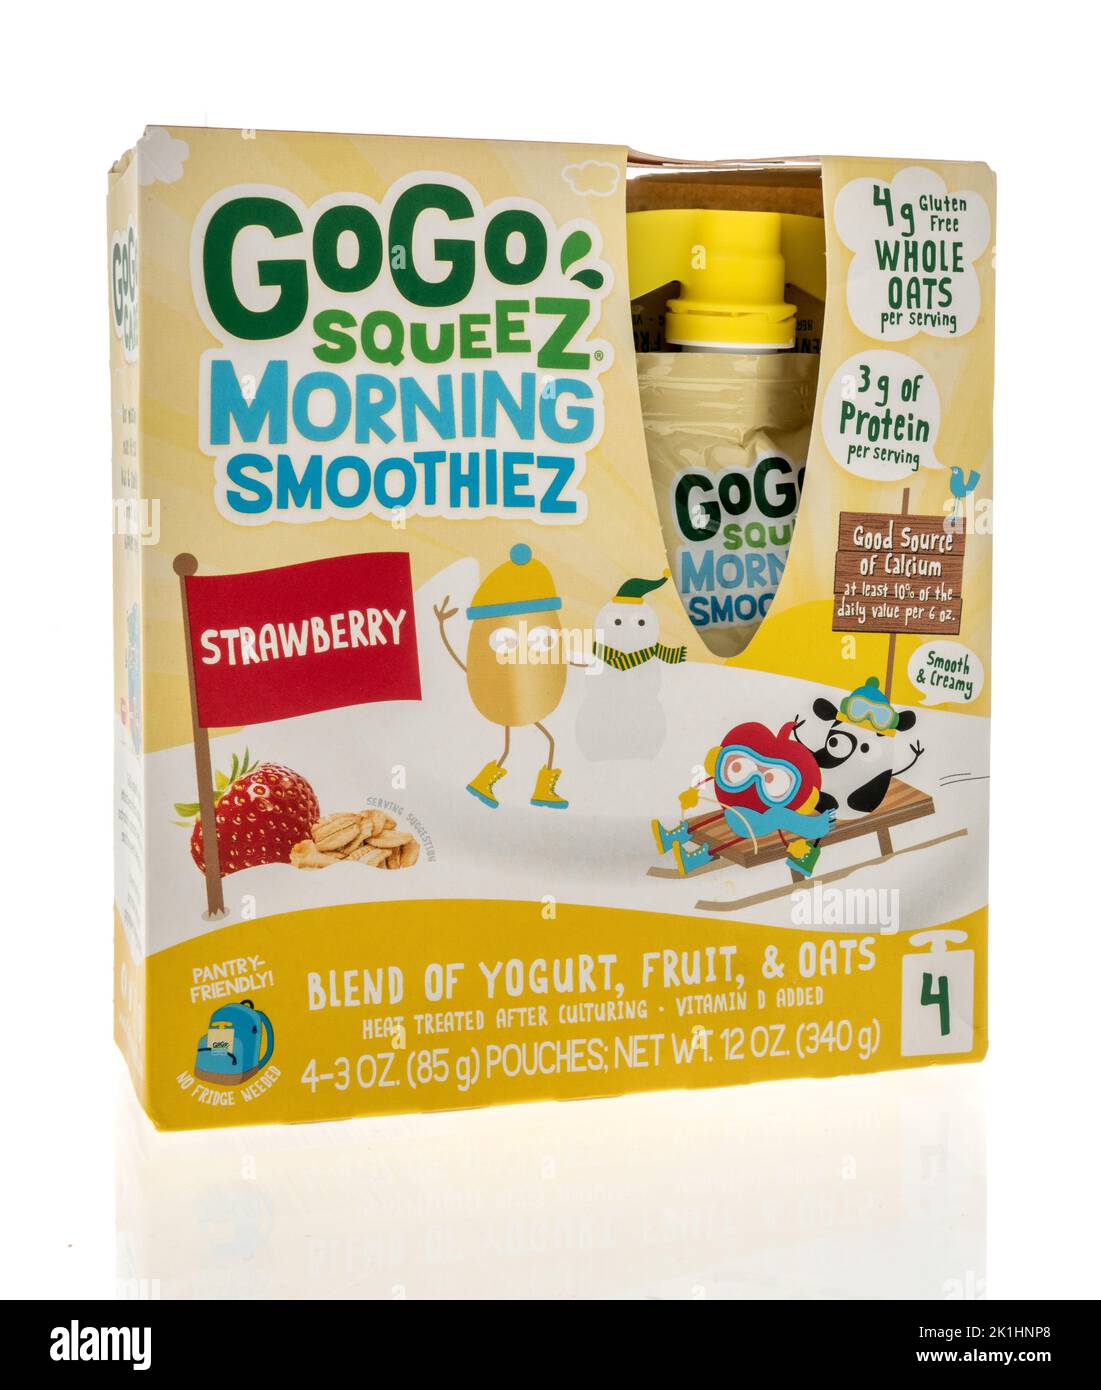 Winneconne, WI - 11 septembre 2022: Un paquet de gogo squez le matin smoothiez mélange de yaourt, de fruits et d'avoine sur un fond isolé. Banque D'Images